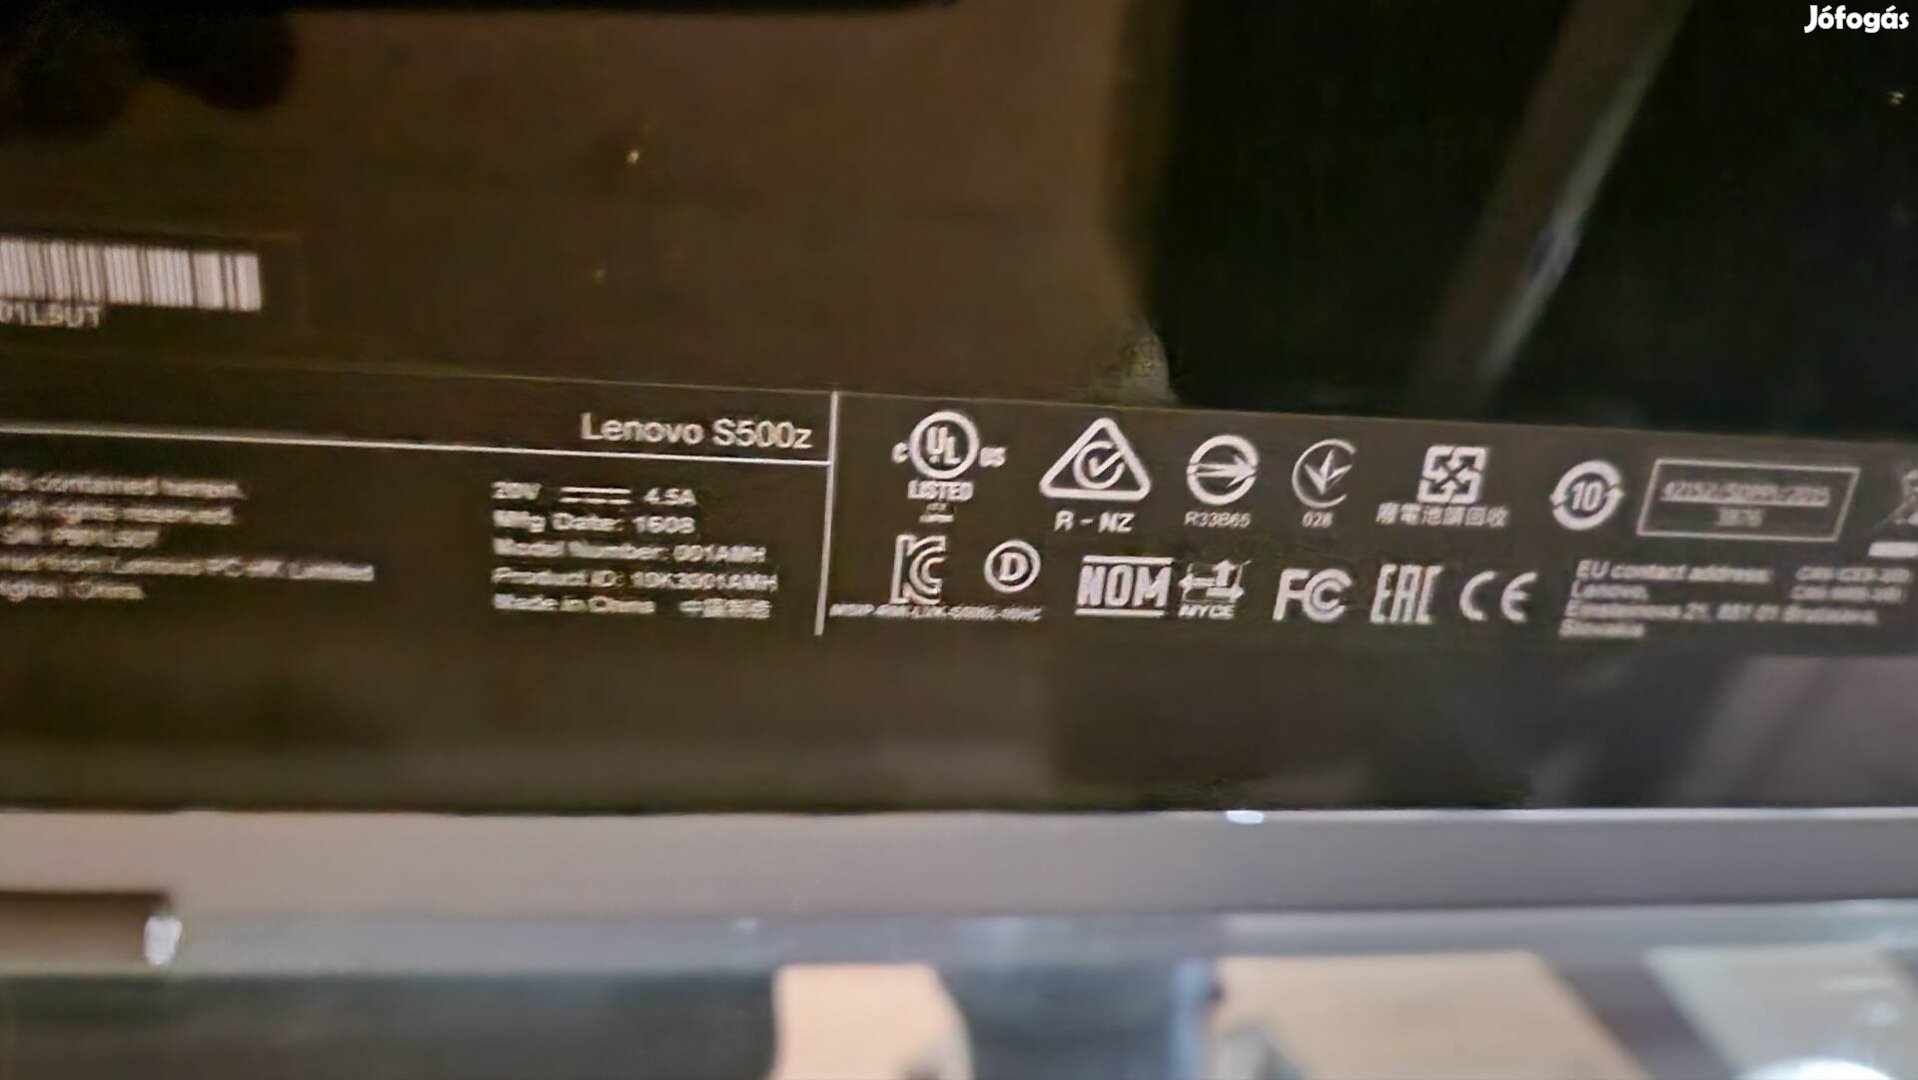 Lenovo S500z All-in-One Számítógép